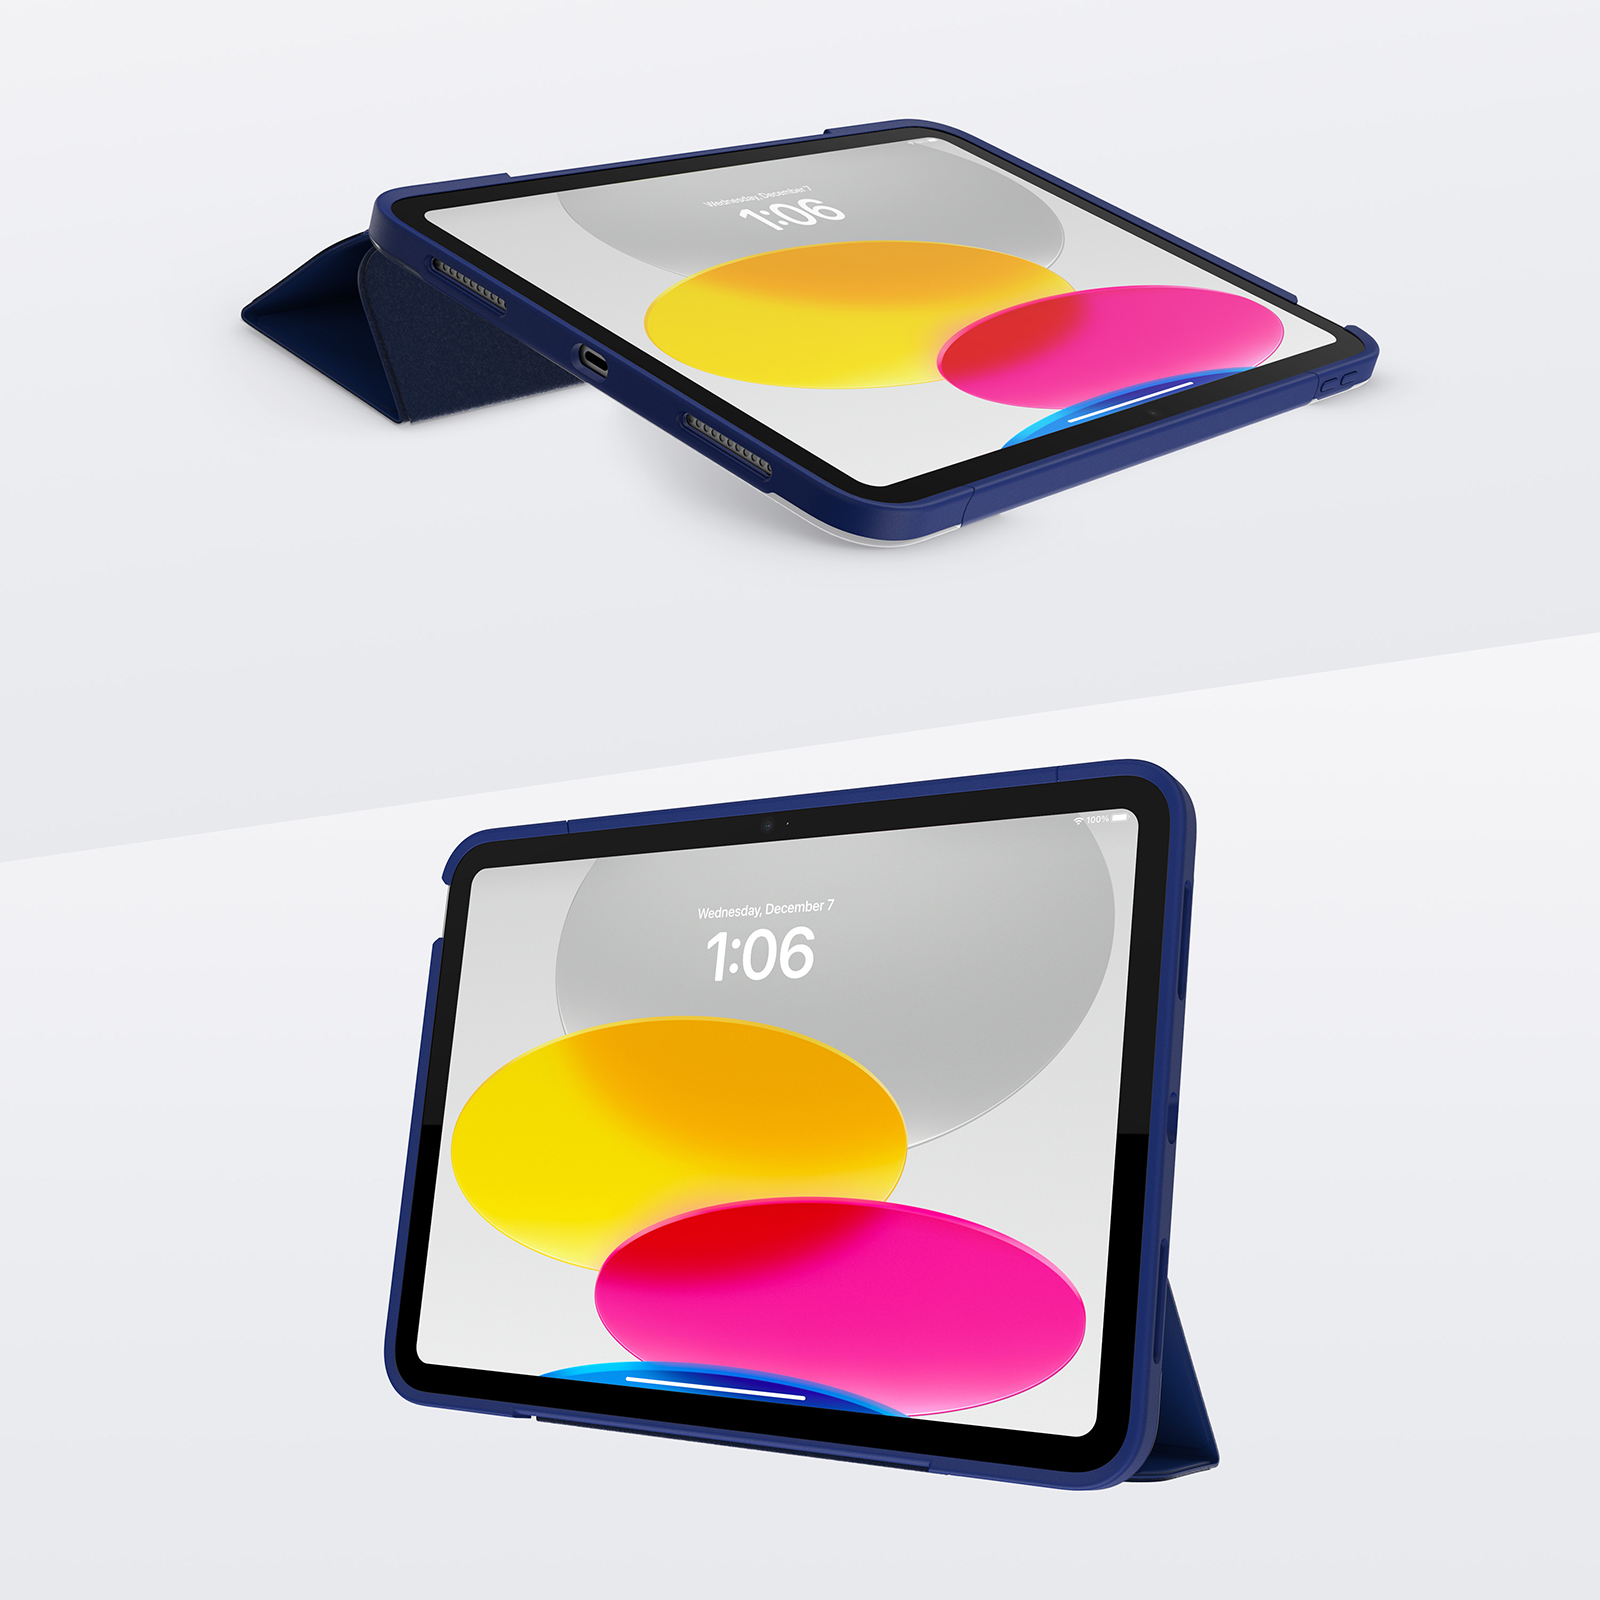 Housse XEPTIO Apple iPad 10 eme generation 360 blanc